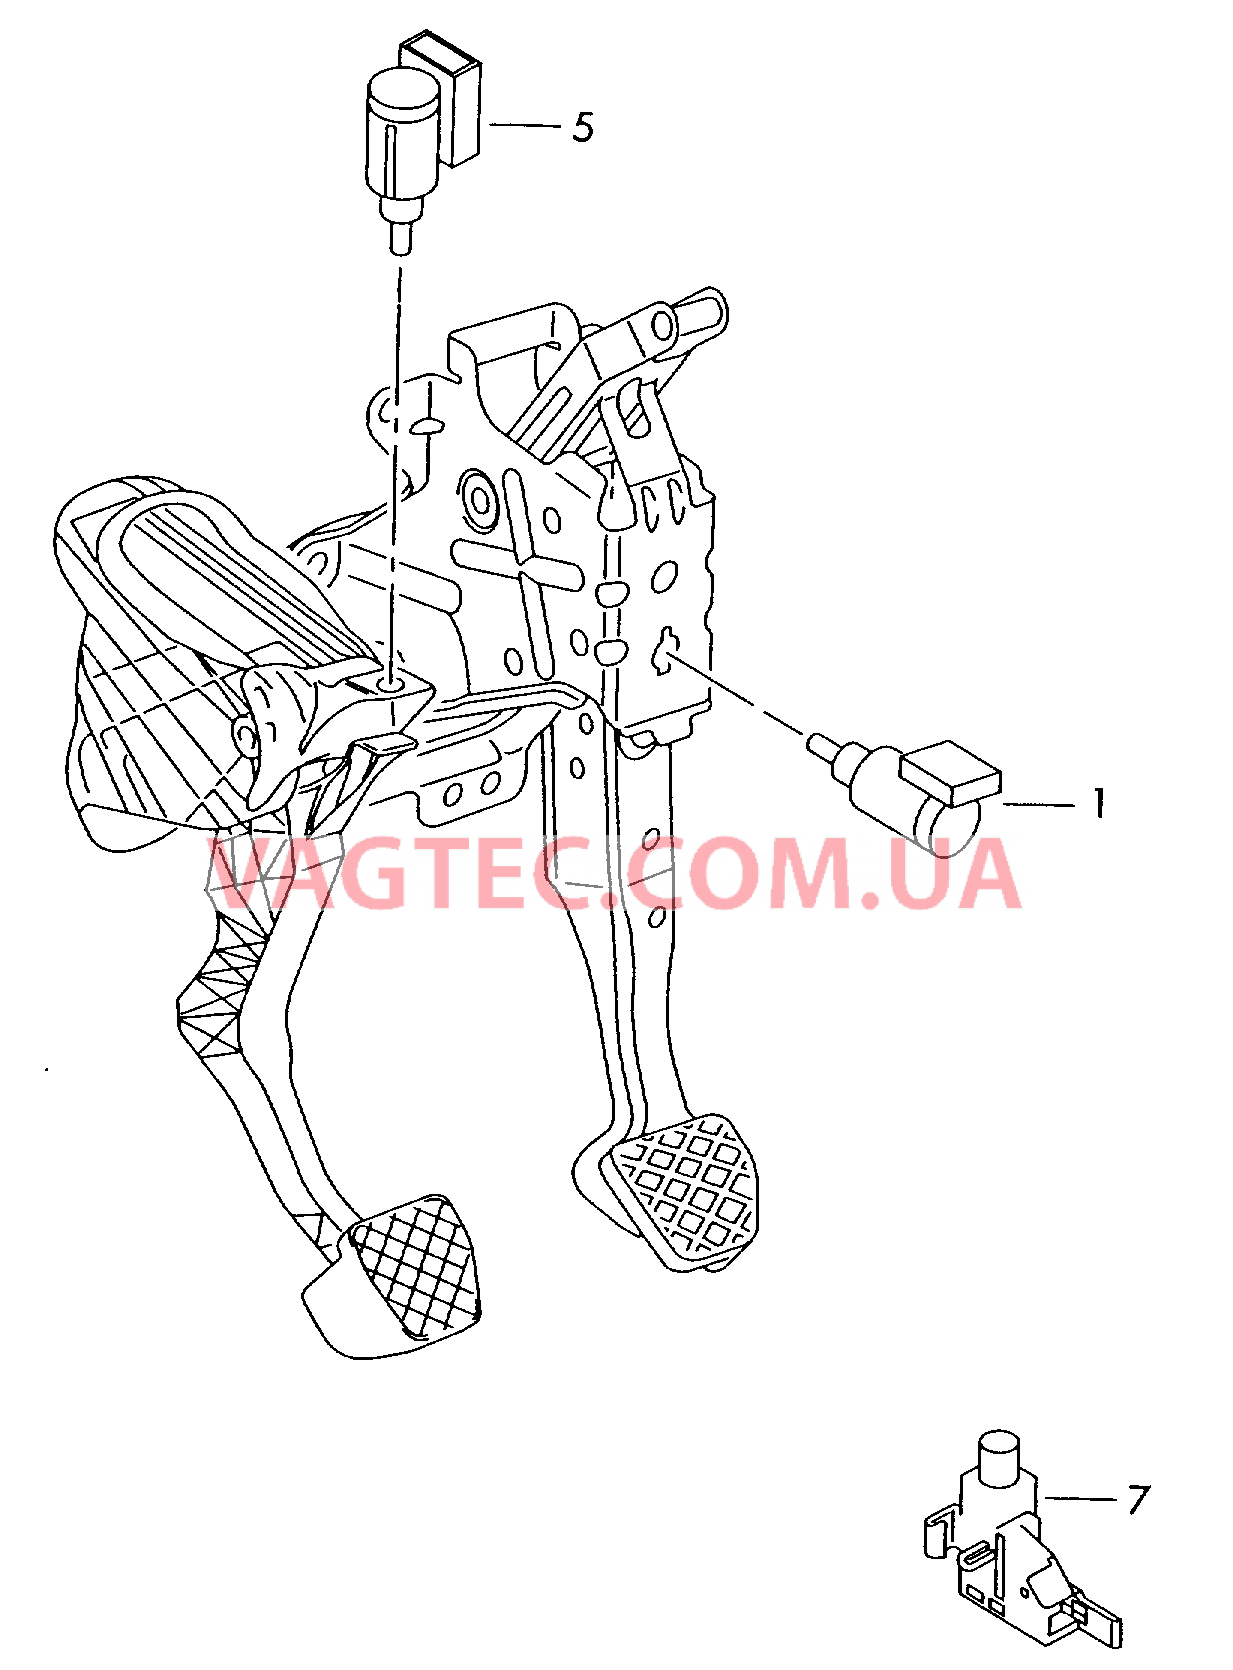 Выключатель стоп-сигнала Выключатель контроля положения ручного тормоза  Датчик Холла Педаль сцепления  для SKODA Octavia 2014